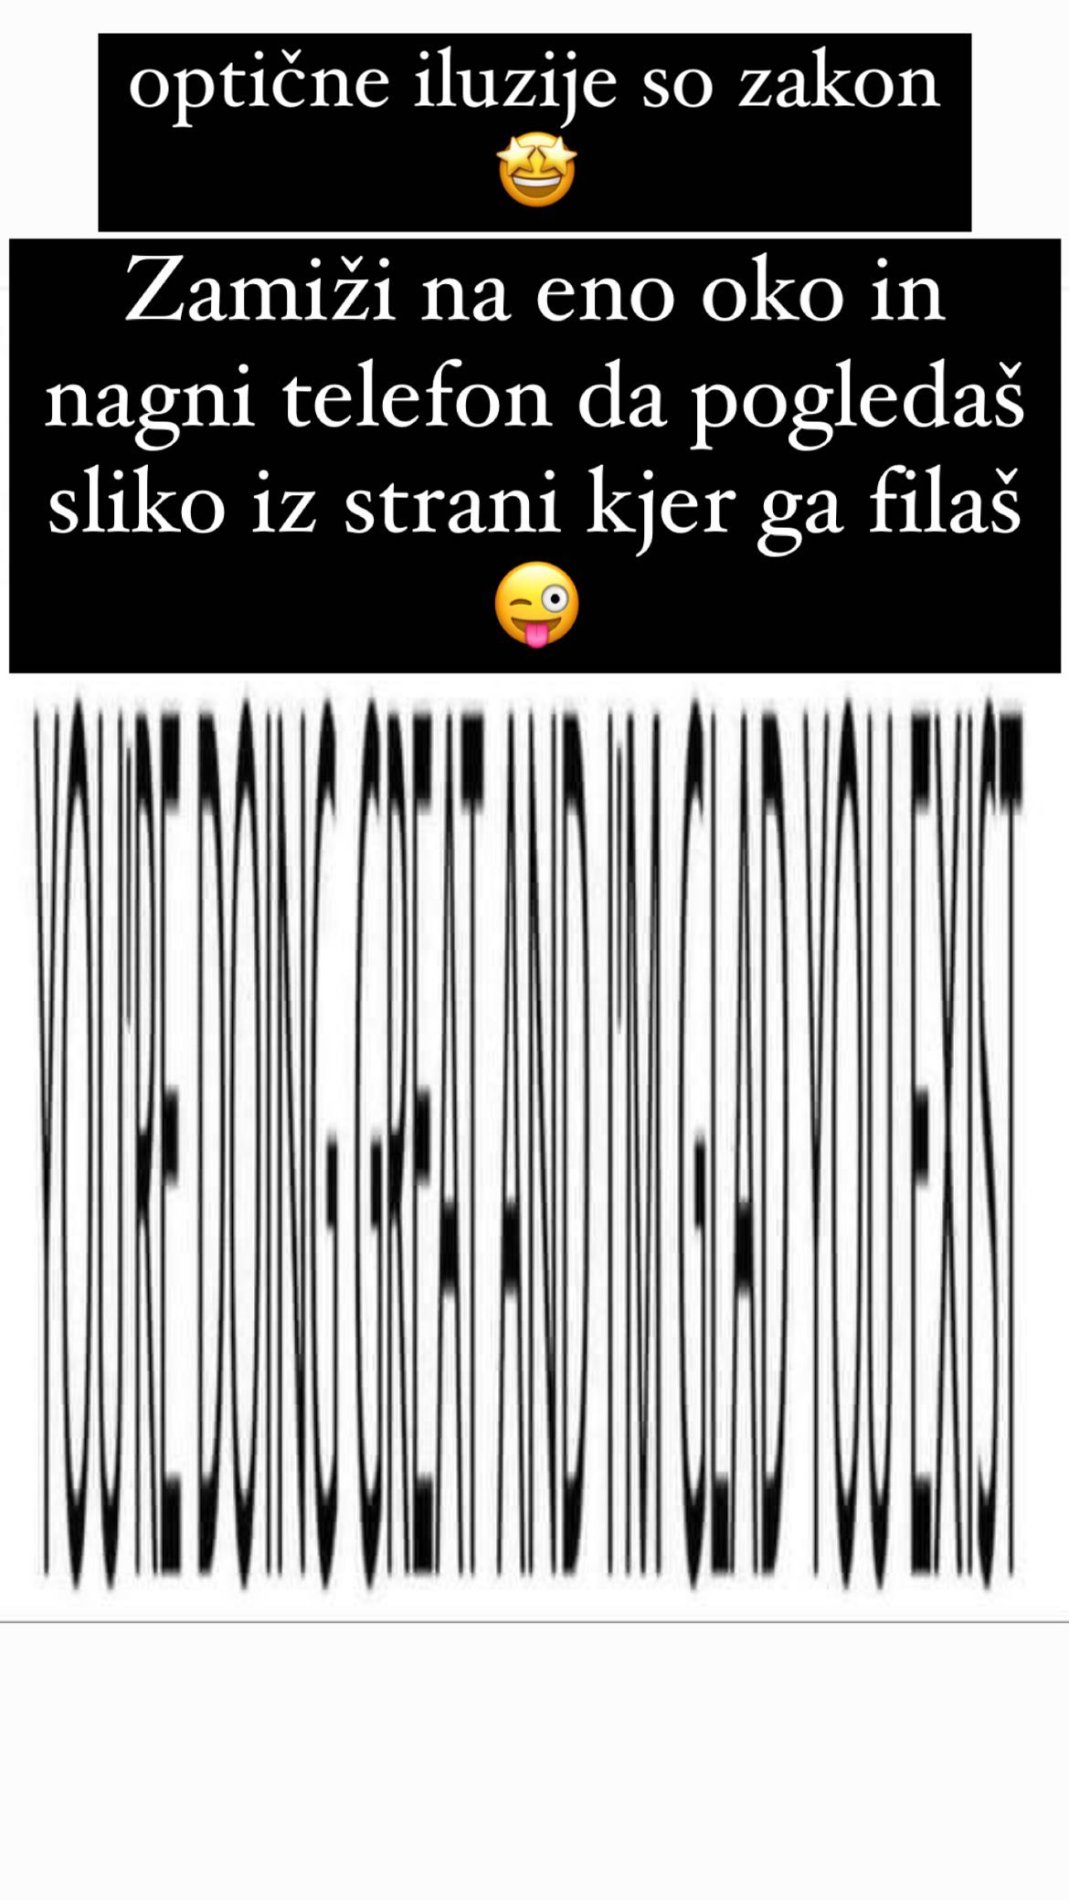 Optična iluzija, ki je navdušila Roka Piletiča. Vir: Instagram